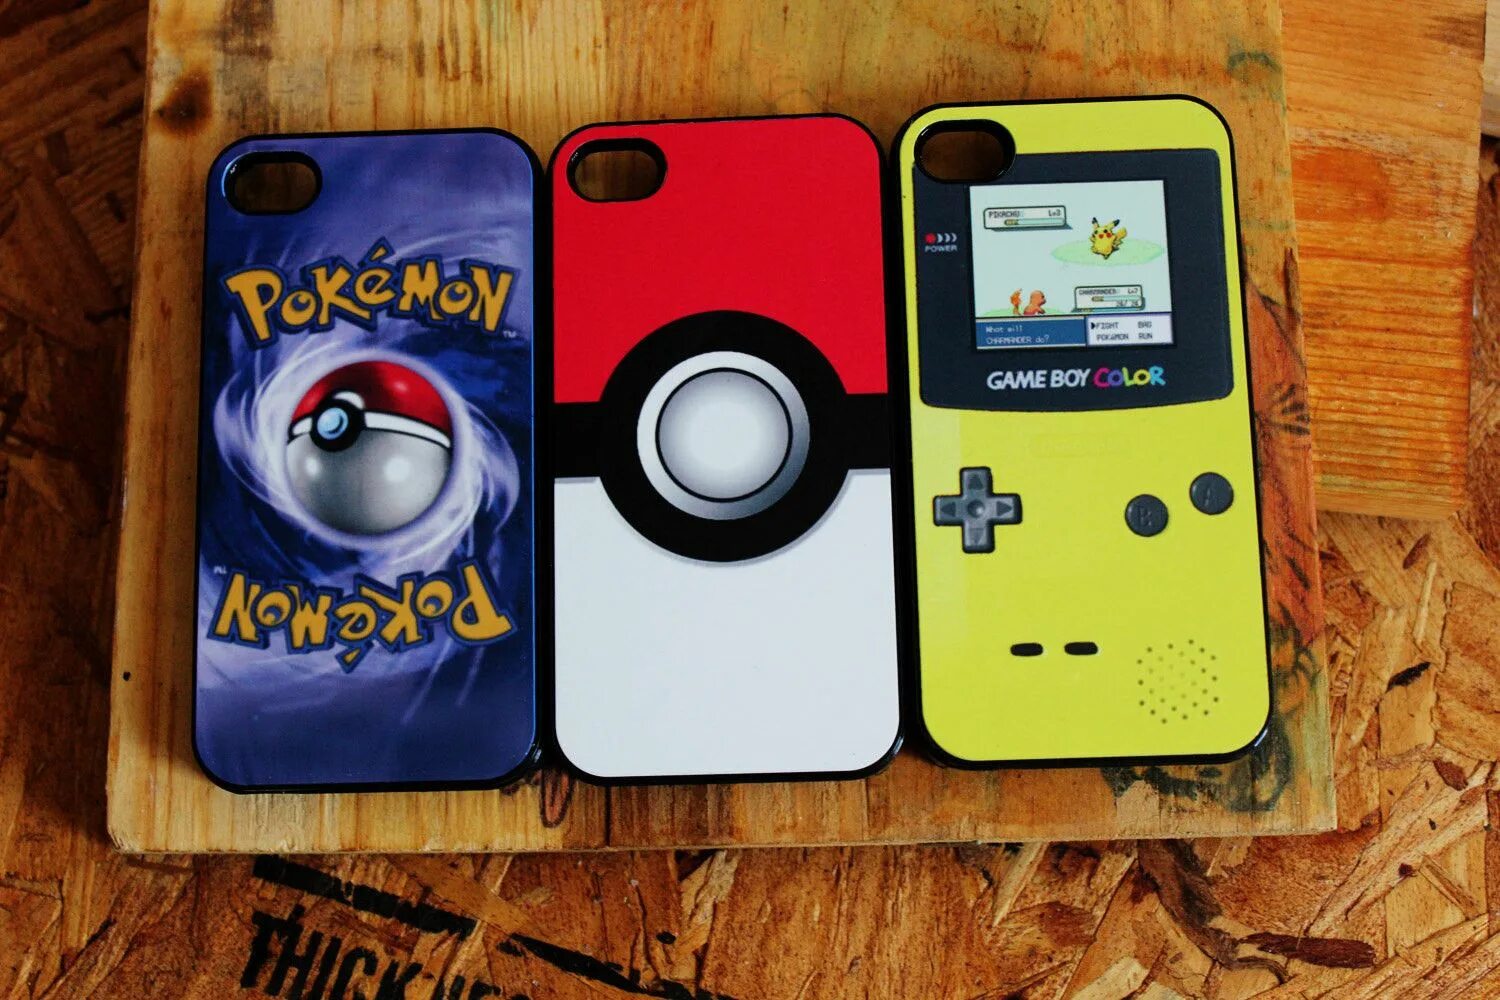 Pokemon phone. Чехол для телефона покемон. Pokemon чехлы для телефона. Чехлы для айфон 5с покемон. Чехол с покемонами для мини айфона.